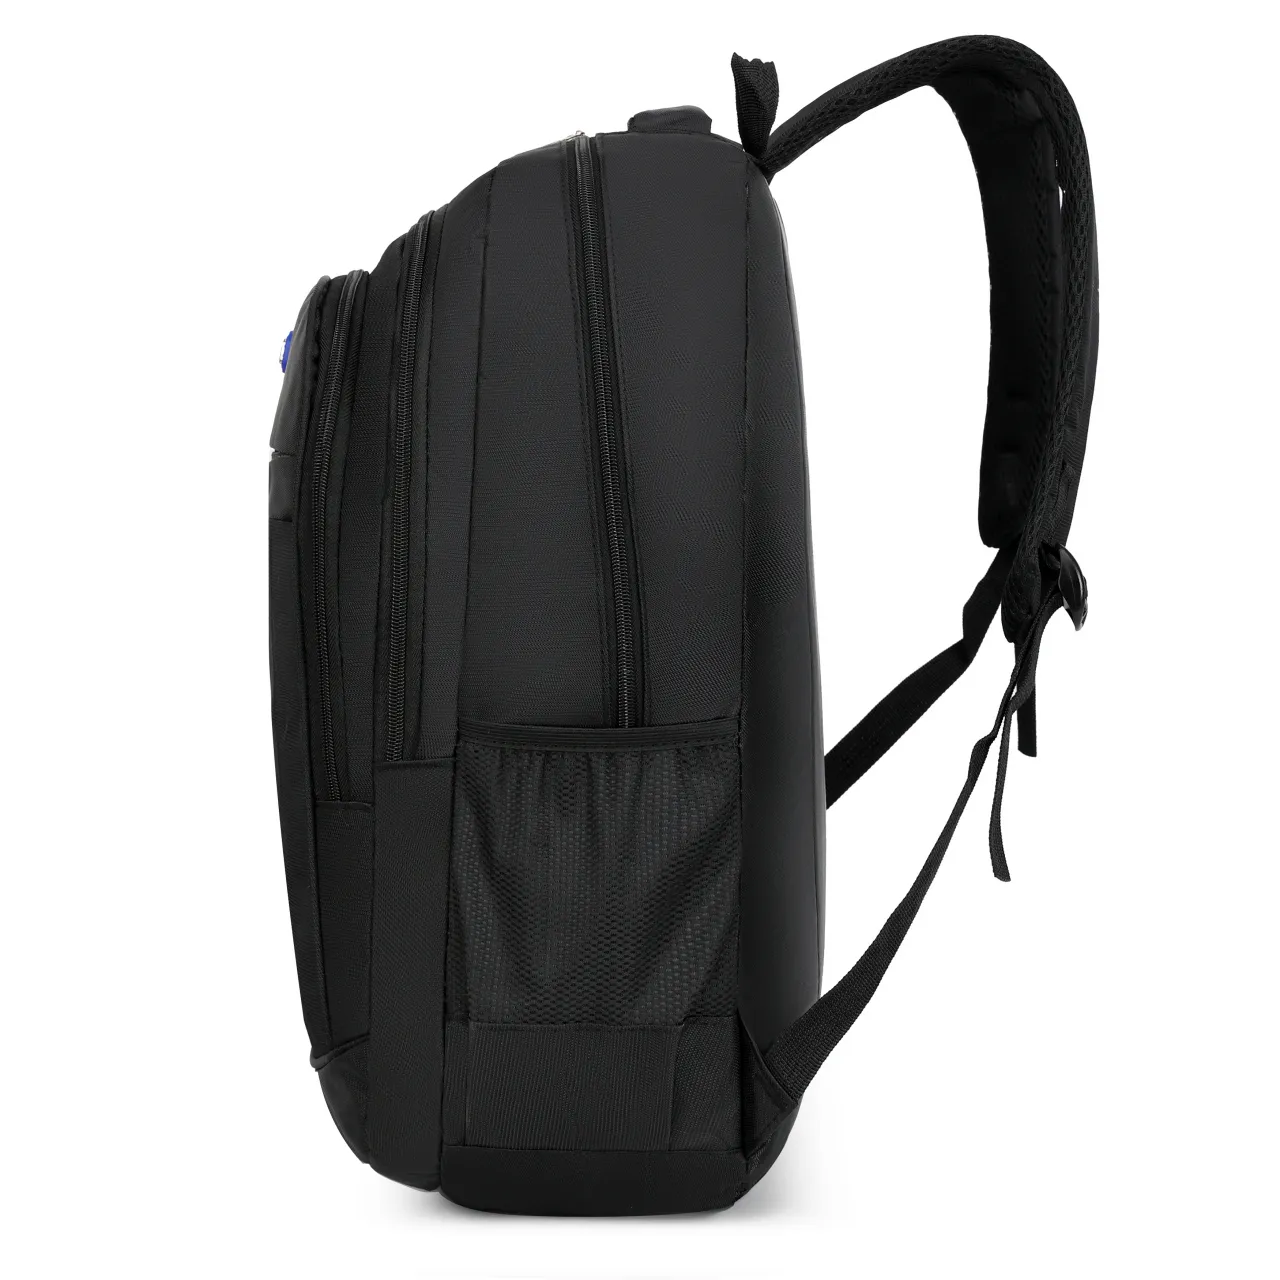 Iyi su geçirmez kumaş büyük kapasiteli iş sırt çantası moda rahat seyahat iş sırt çantası naylon iş sırt çantası